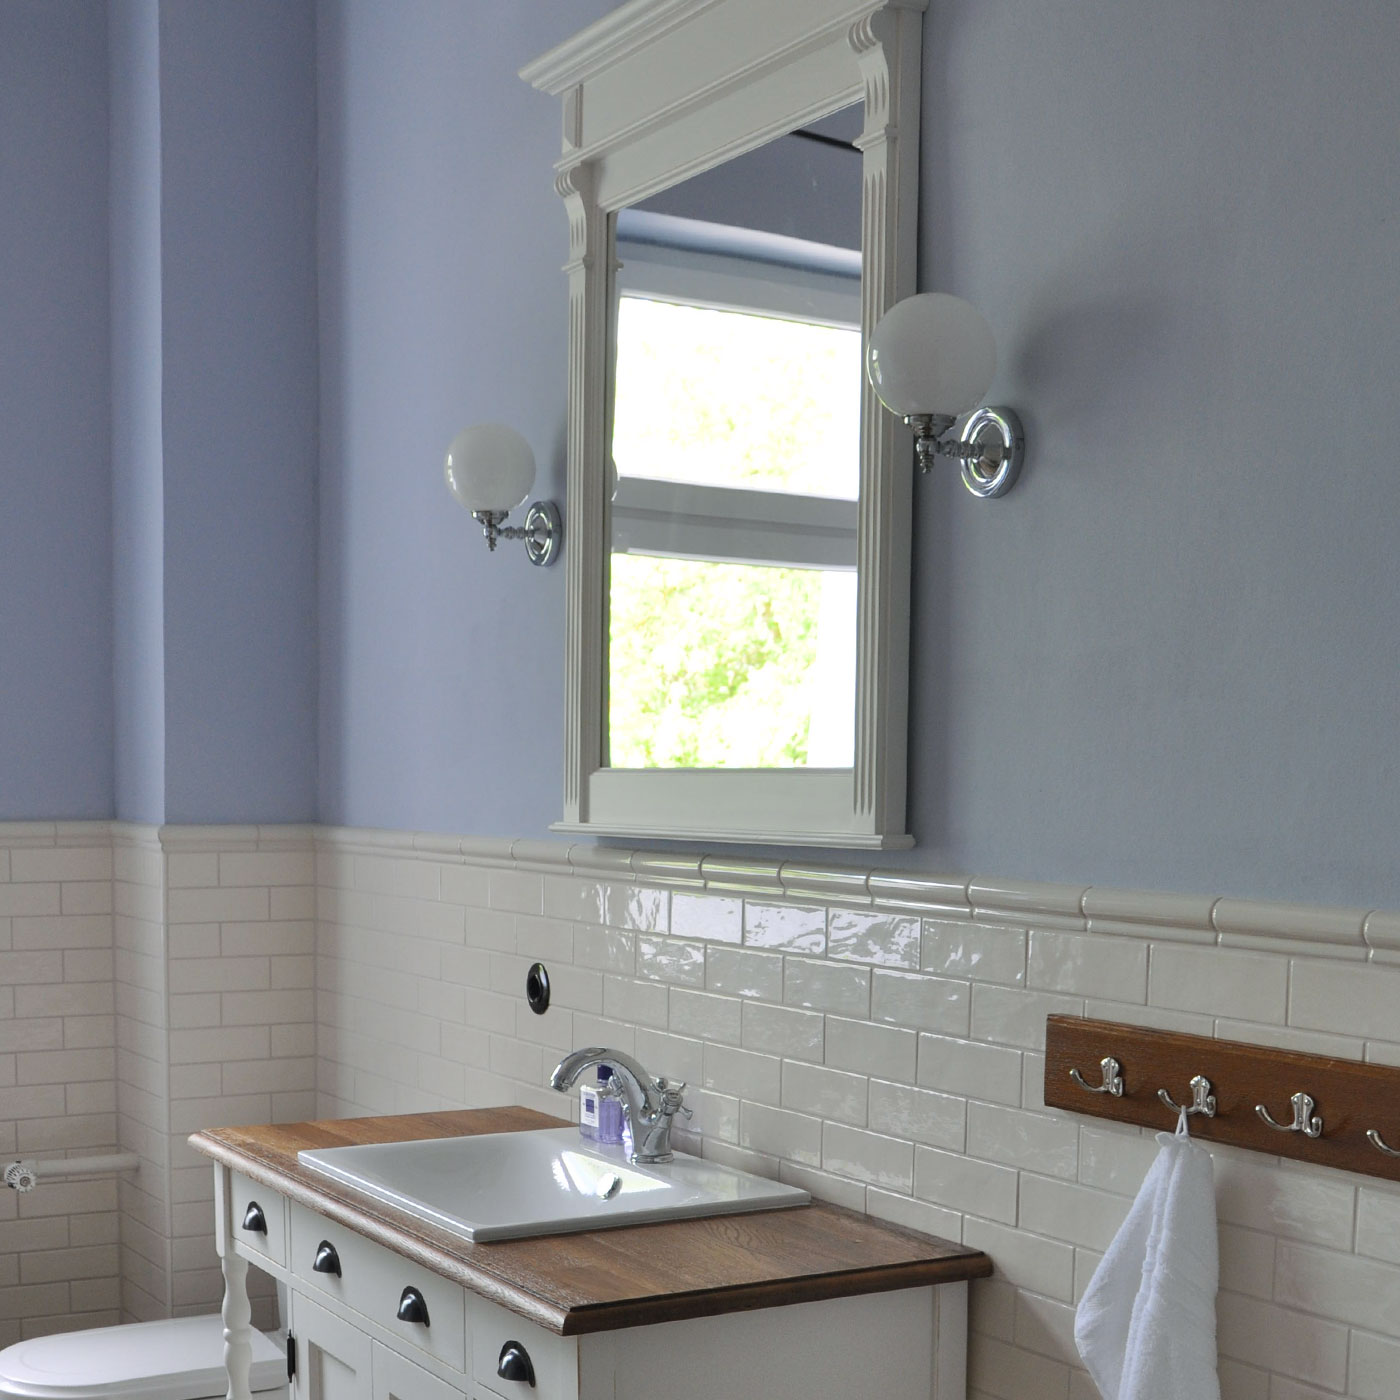 Glaskugel-Wandleuchte mit antiker Anmutung: Wandleuchte im nostalgischen Landhaus-Badezimmer neben dem Spiegel